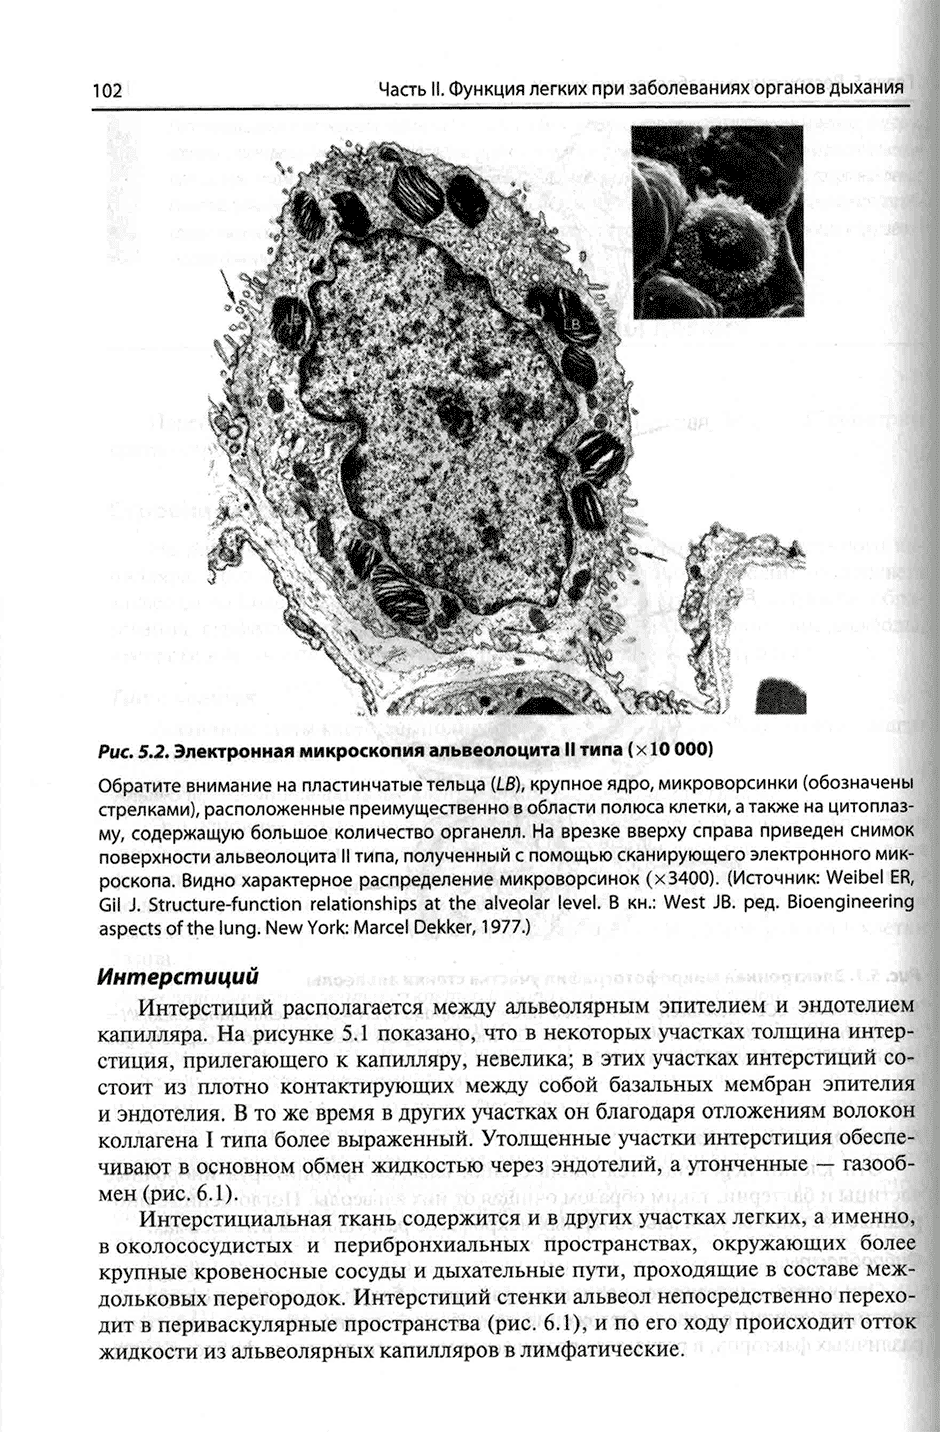 Рис. 5.2. Электронная микроскопия альвеолоцита II типа